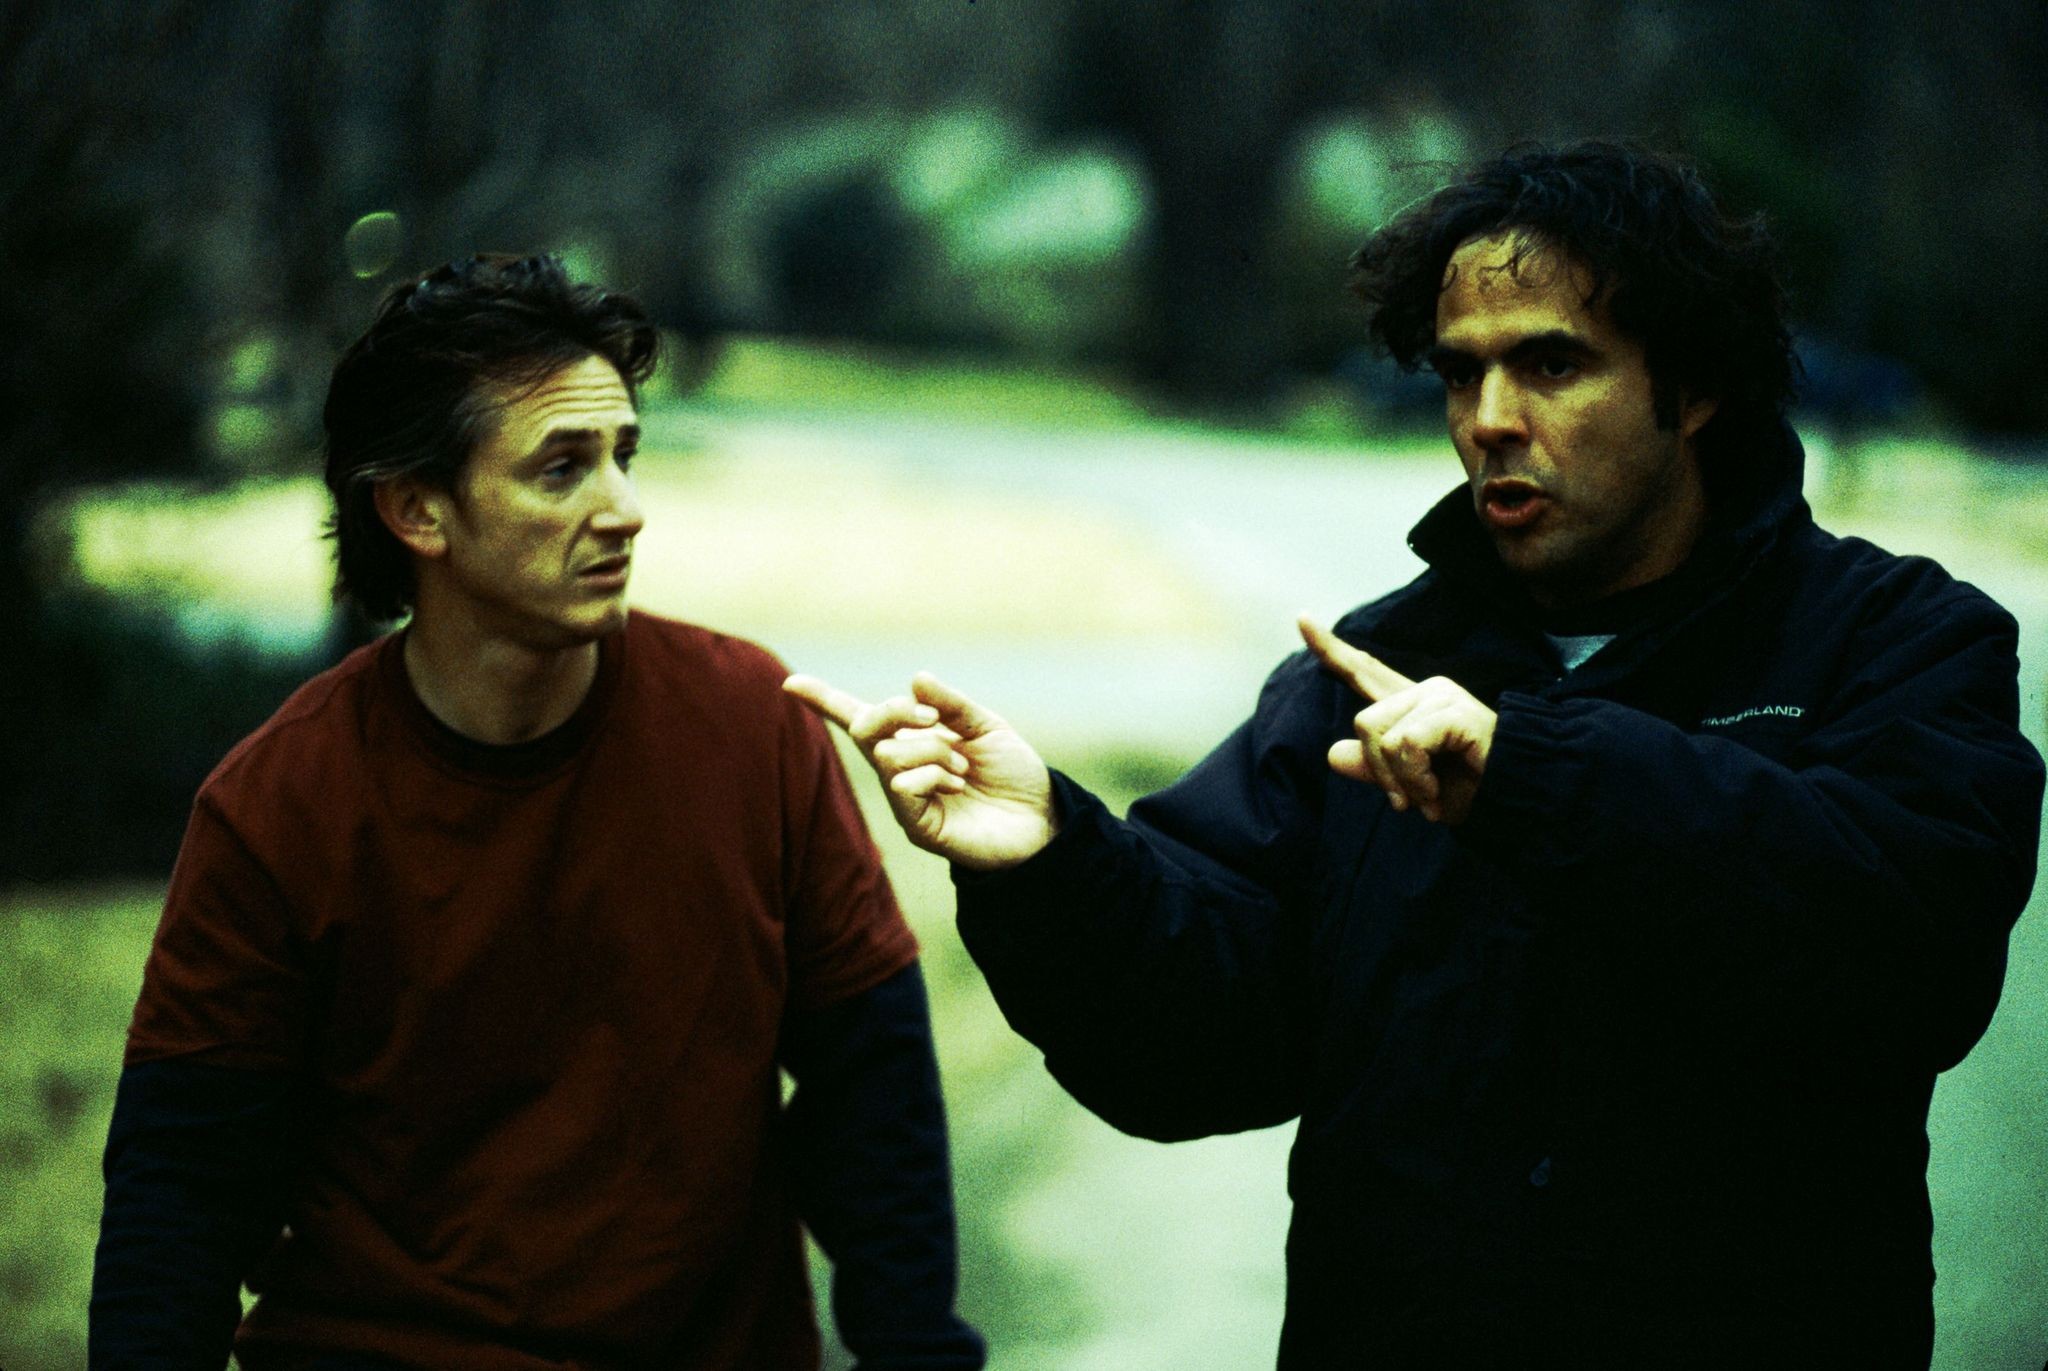 Шон Пенн и Алехандро Г. Иньярриту на съёмках 21 грамма, 2003